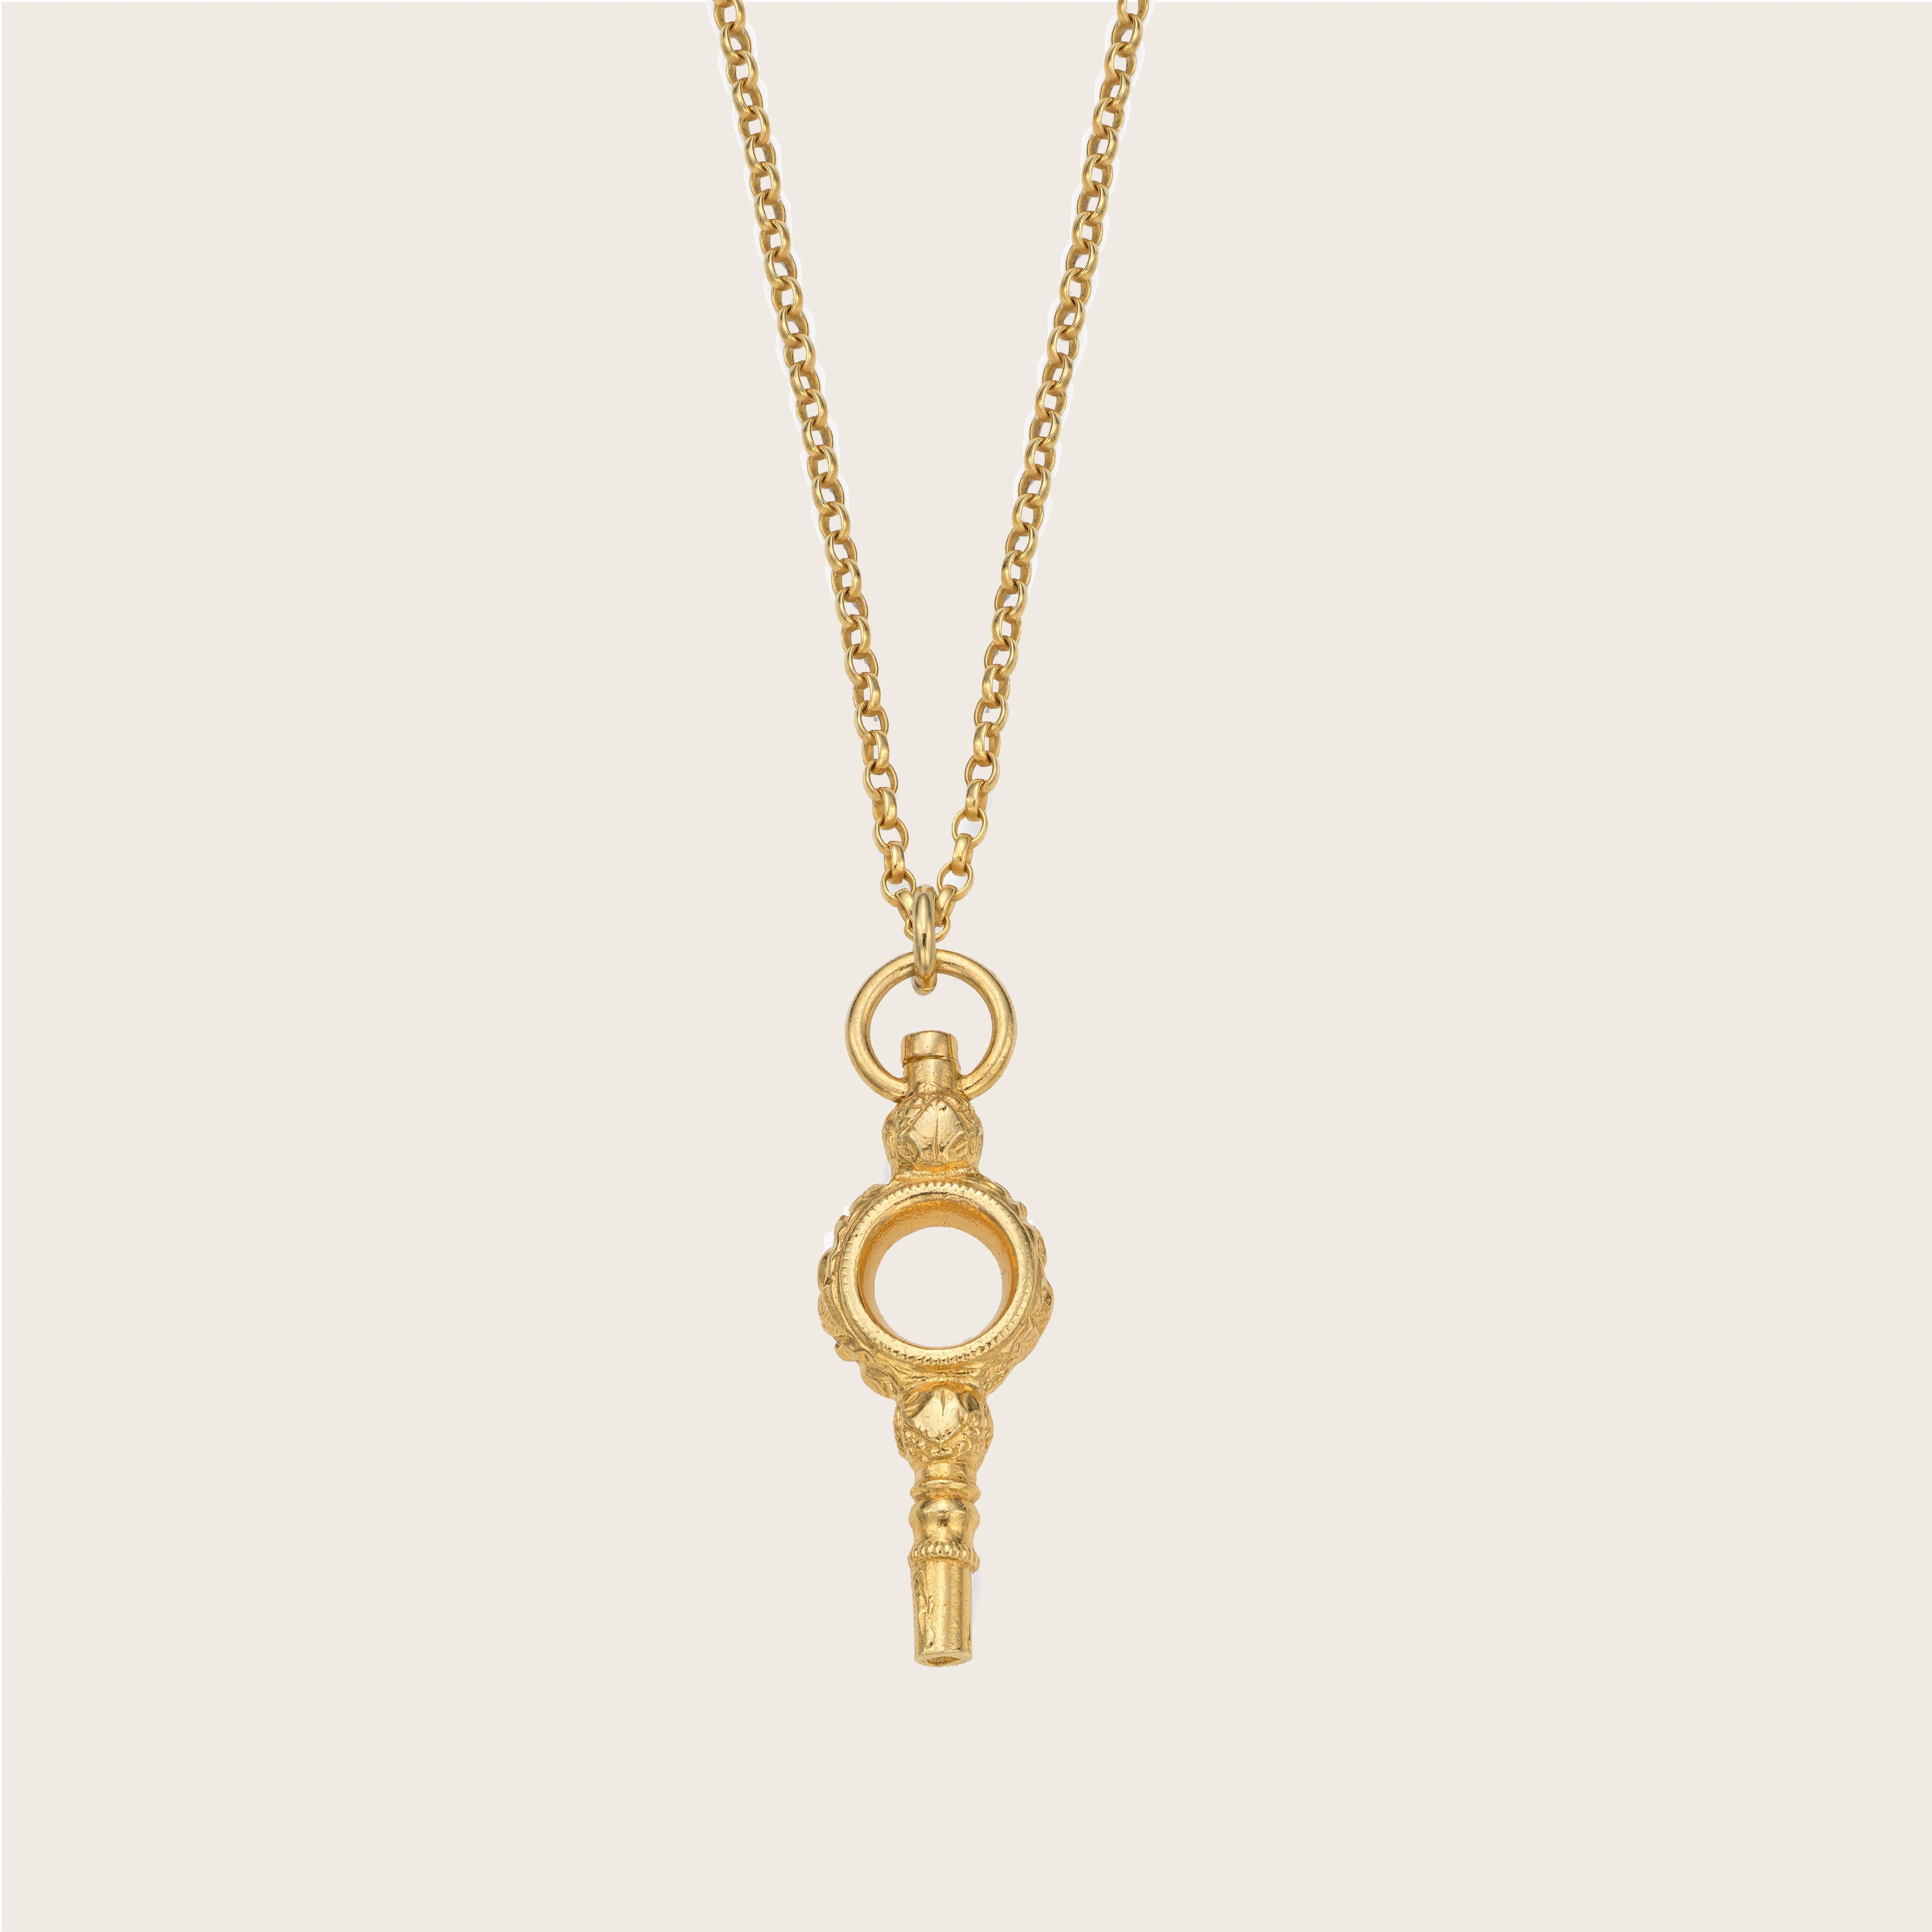 Large Watch Key Necklace - harryrockslondon